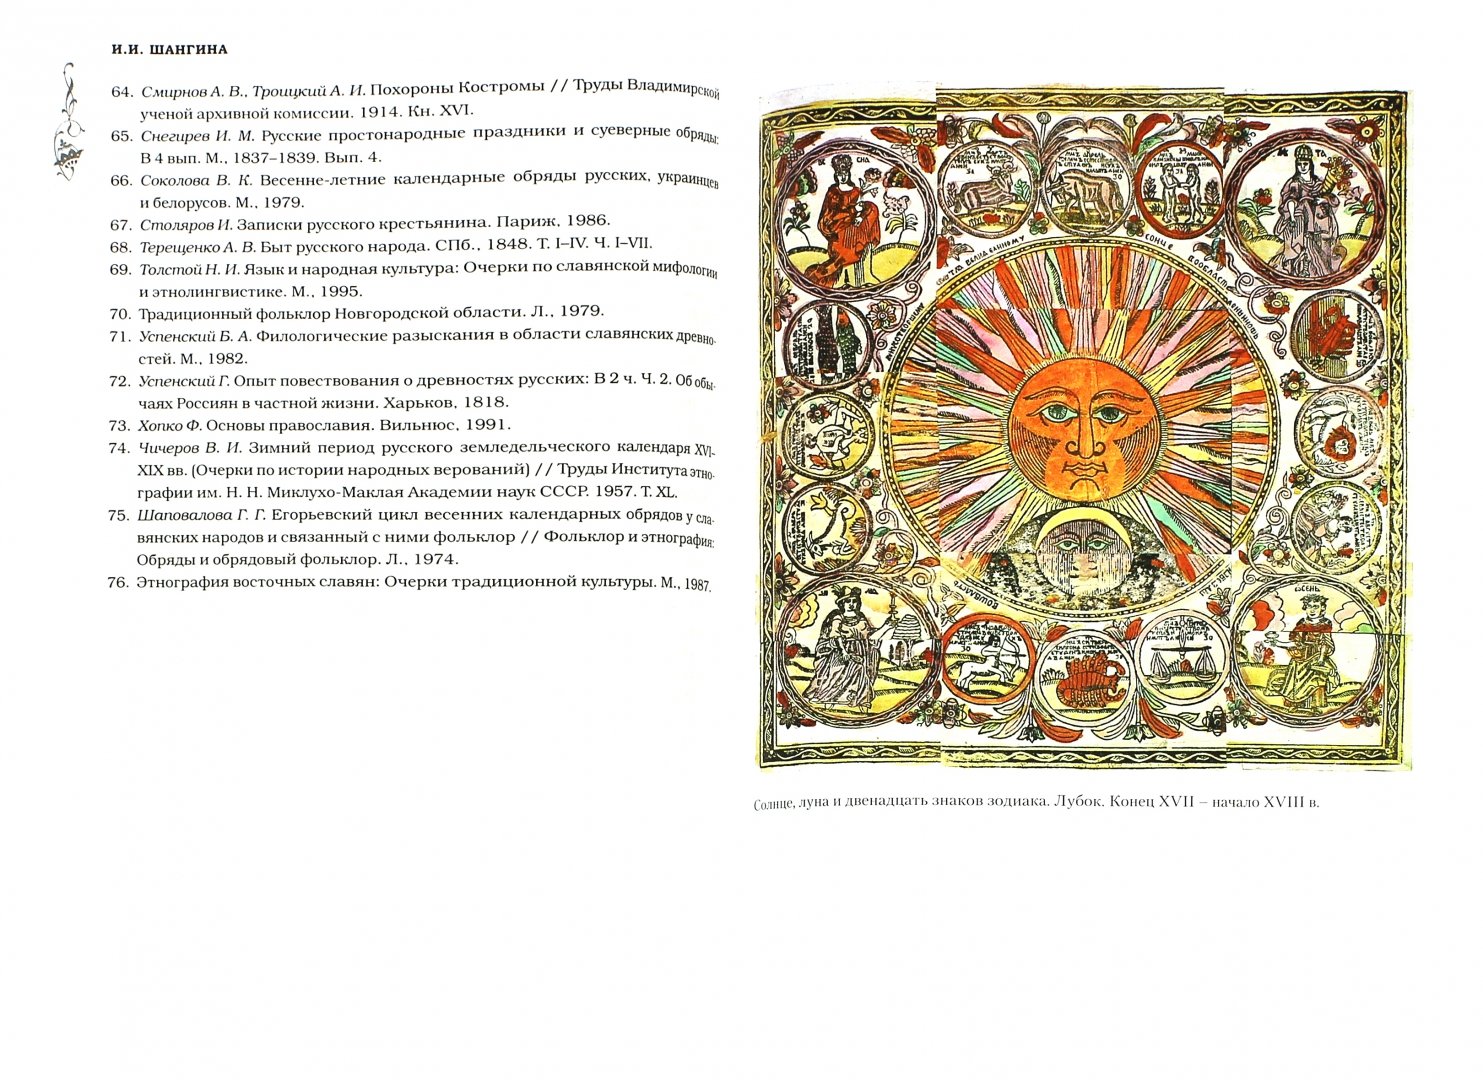 Иллюстрация 1 из 21 для Русские праздники - Шангина, Некрылова | Лабиринт - книги. Источник: Лабиринт